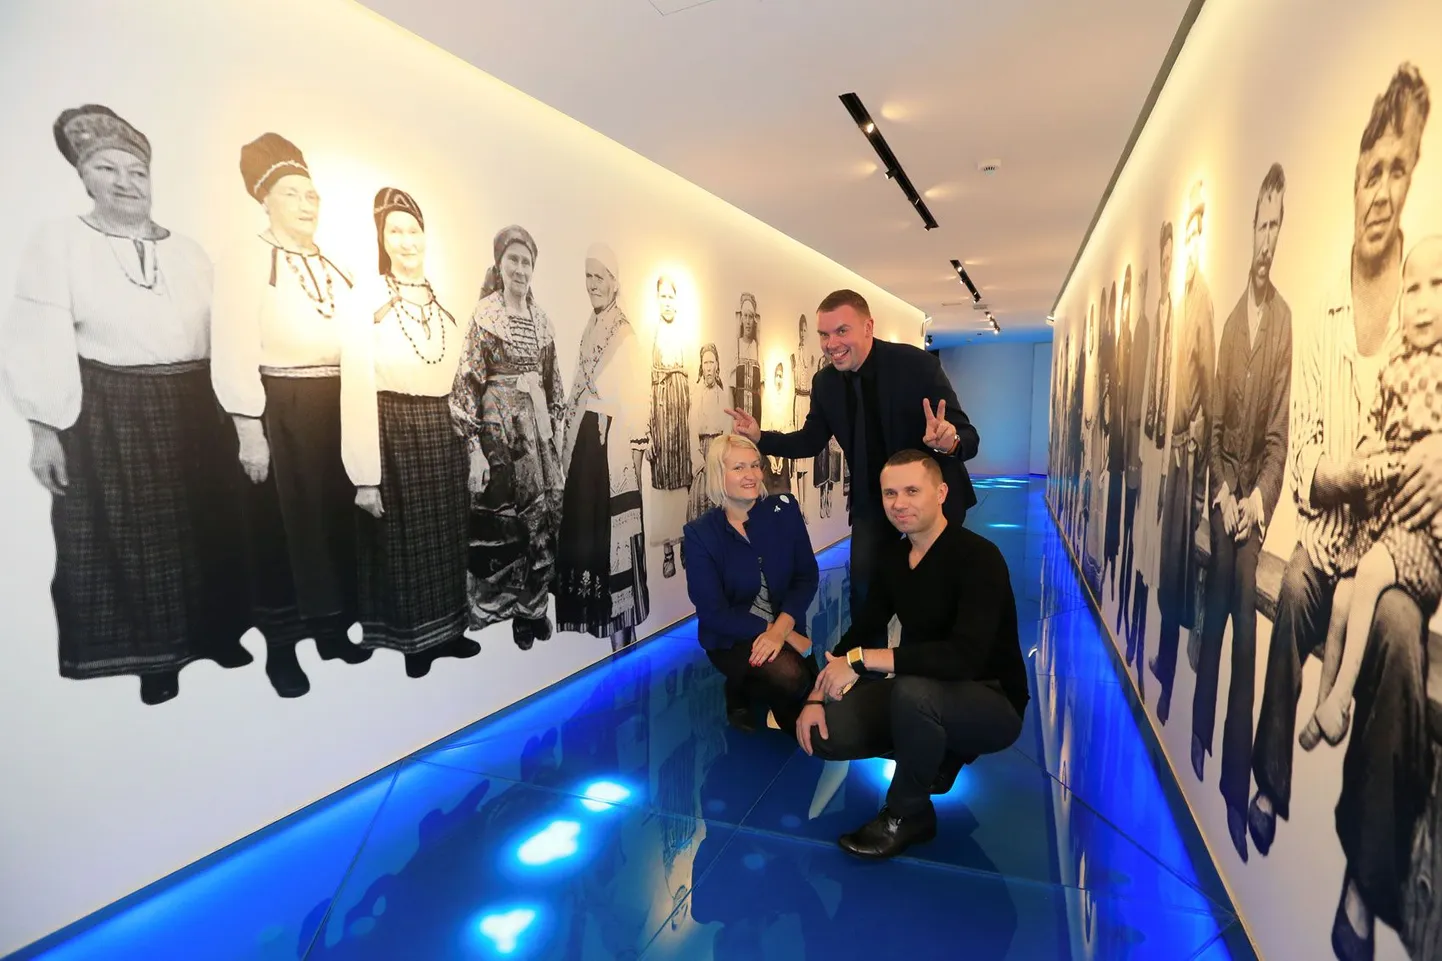 Jõel läbi soome-ugri rahvaste näituse seisavad selle loojad Anne Määrmann (vasakult), Ken Ruut ja Jan Graps arhitektibüroost JanKen Wisespace. Neid aitas Velveti agentuur. Valged kujundid on kalad.